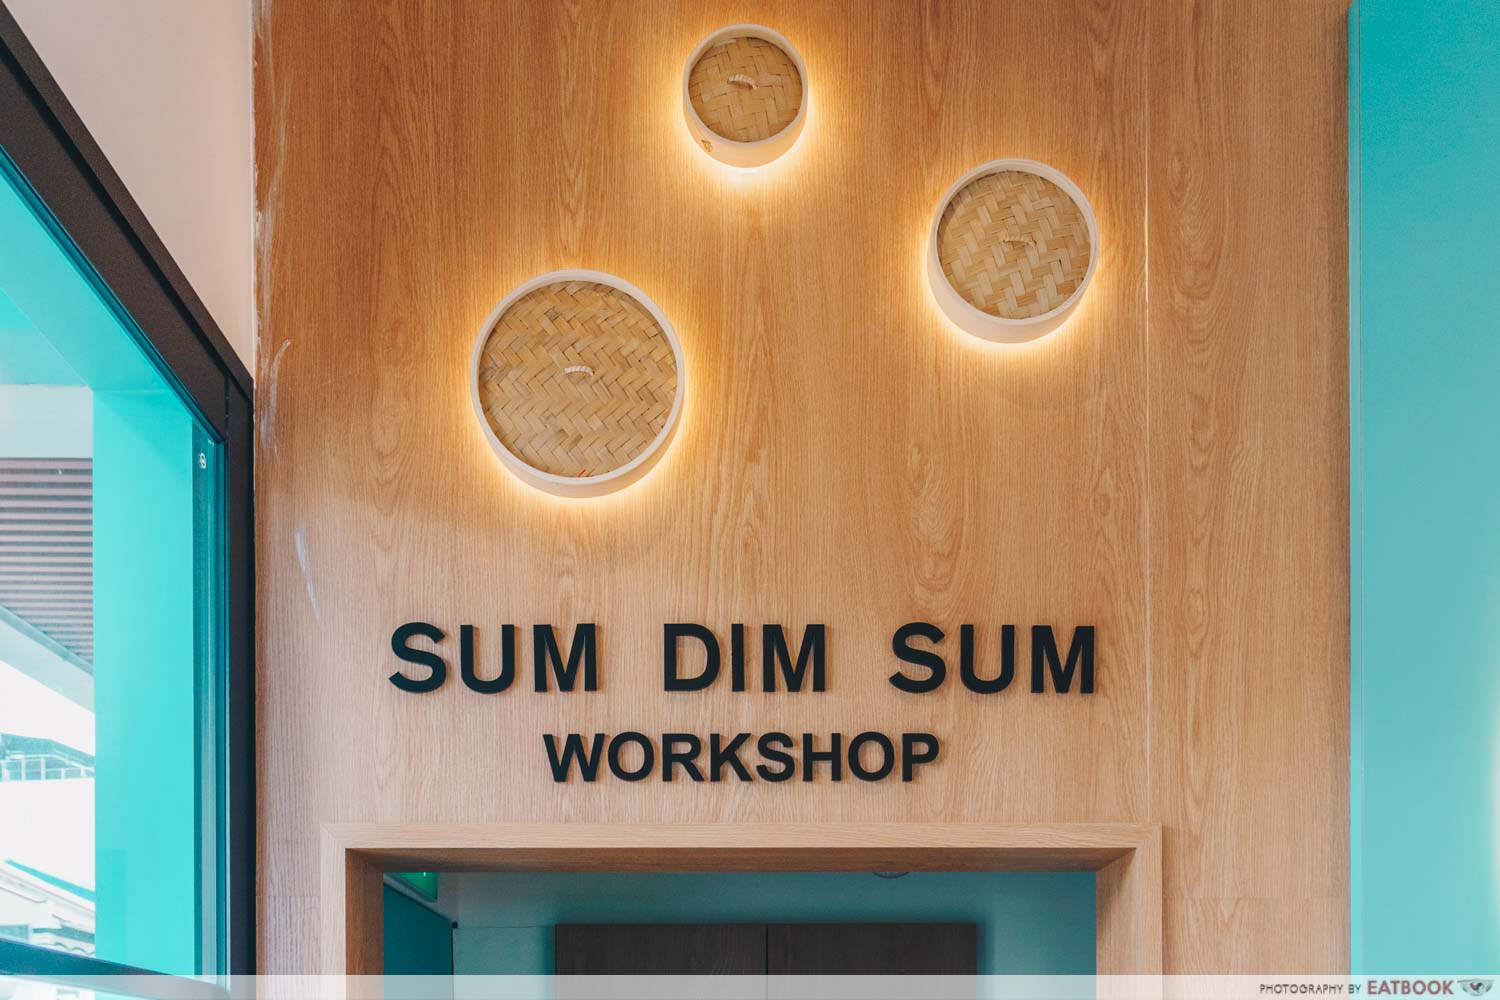 Sum Dim Sum Workshop sign